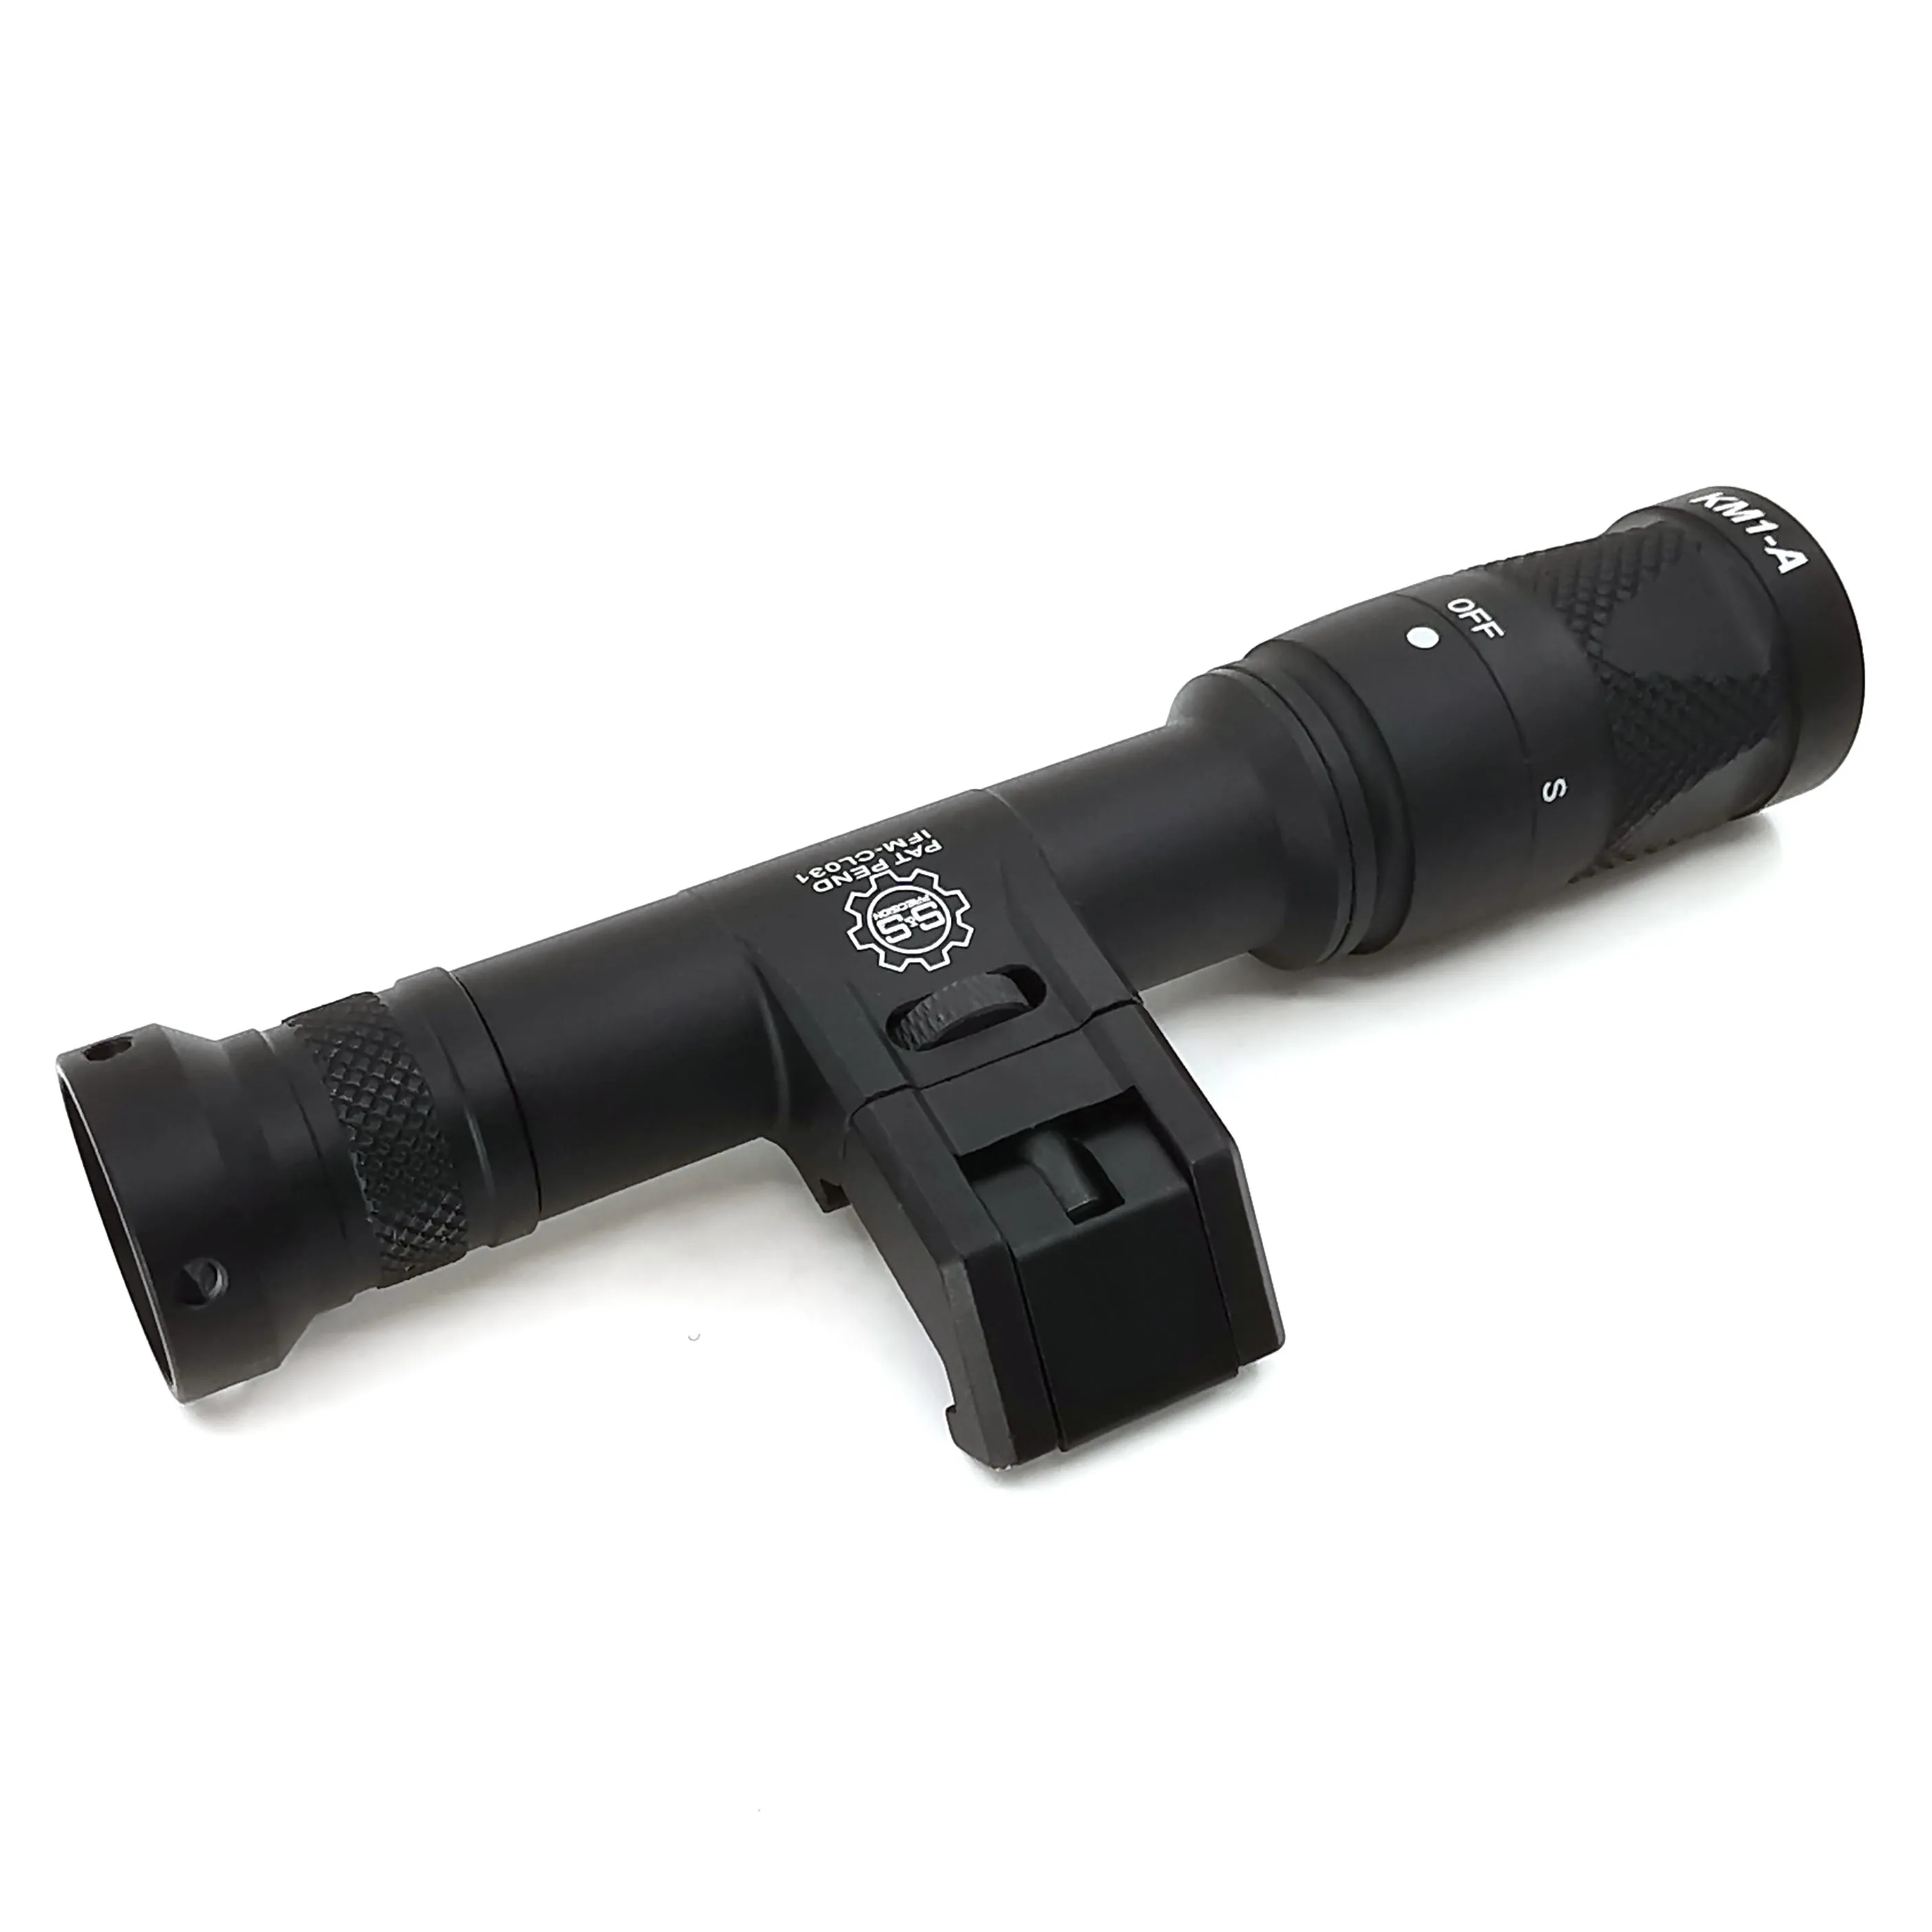 SOTAC-GEAR Тактический страйкбольный оружейный светильник IFM M600V светодиодный светильник для разведчика Тактический светильник для вспышки охотничья лампа винтовка пистолет оружие зажигалки